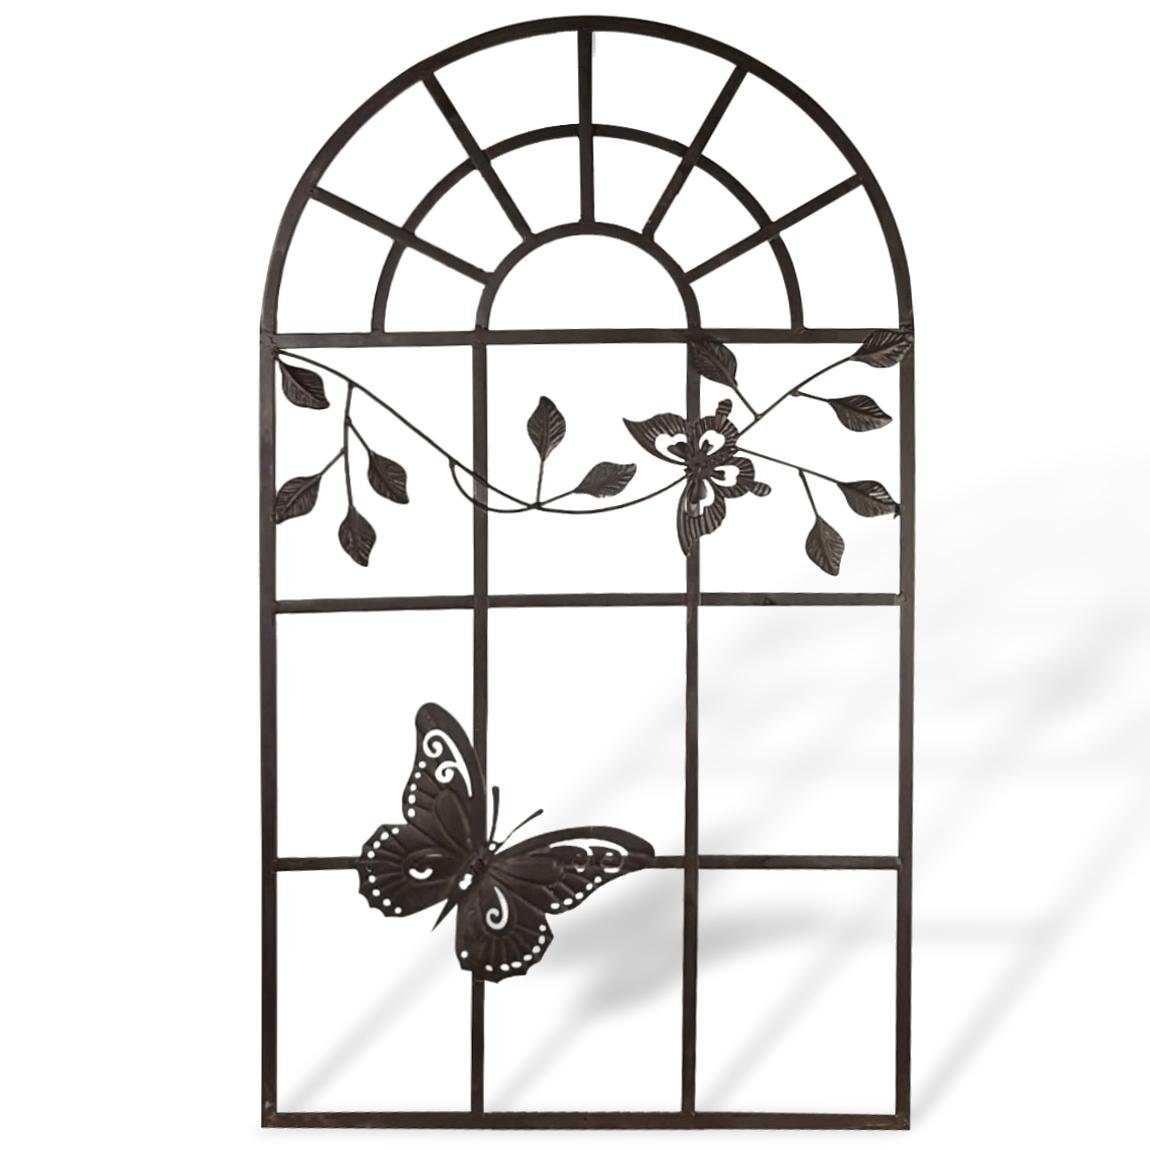 Aubaho Fenster Nostalgie Stallfenster Fenster Metall Rahmen Schmetterling Antik-Stil